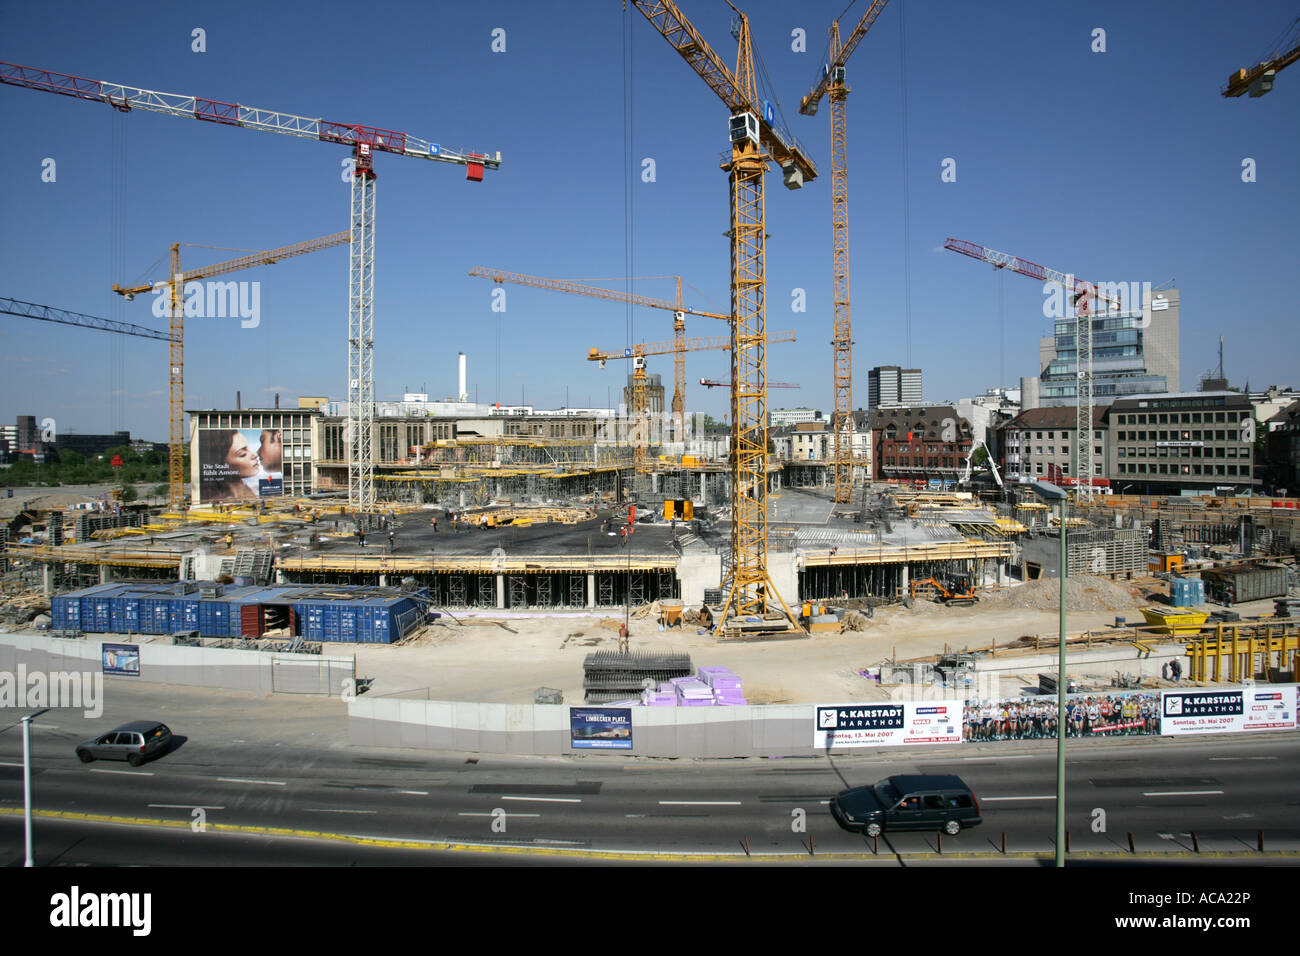 Site de construction d'un centre commercial géant Karstadt Limbecker Platz', 'Essen, Rhénanie du Nord-Westphalie, Allemagne Banque D'Images